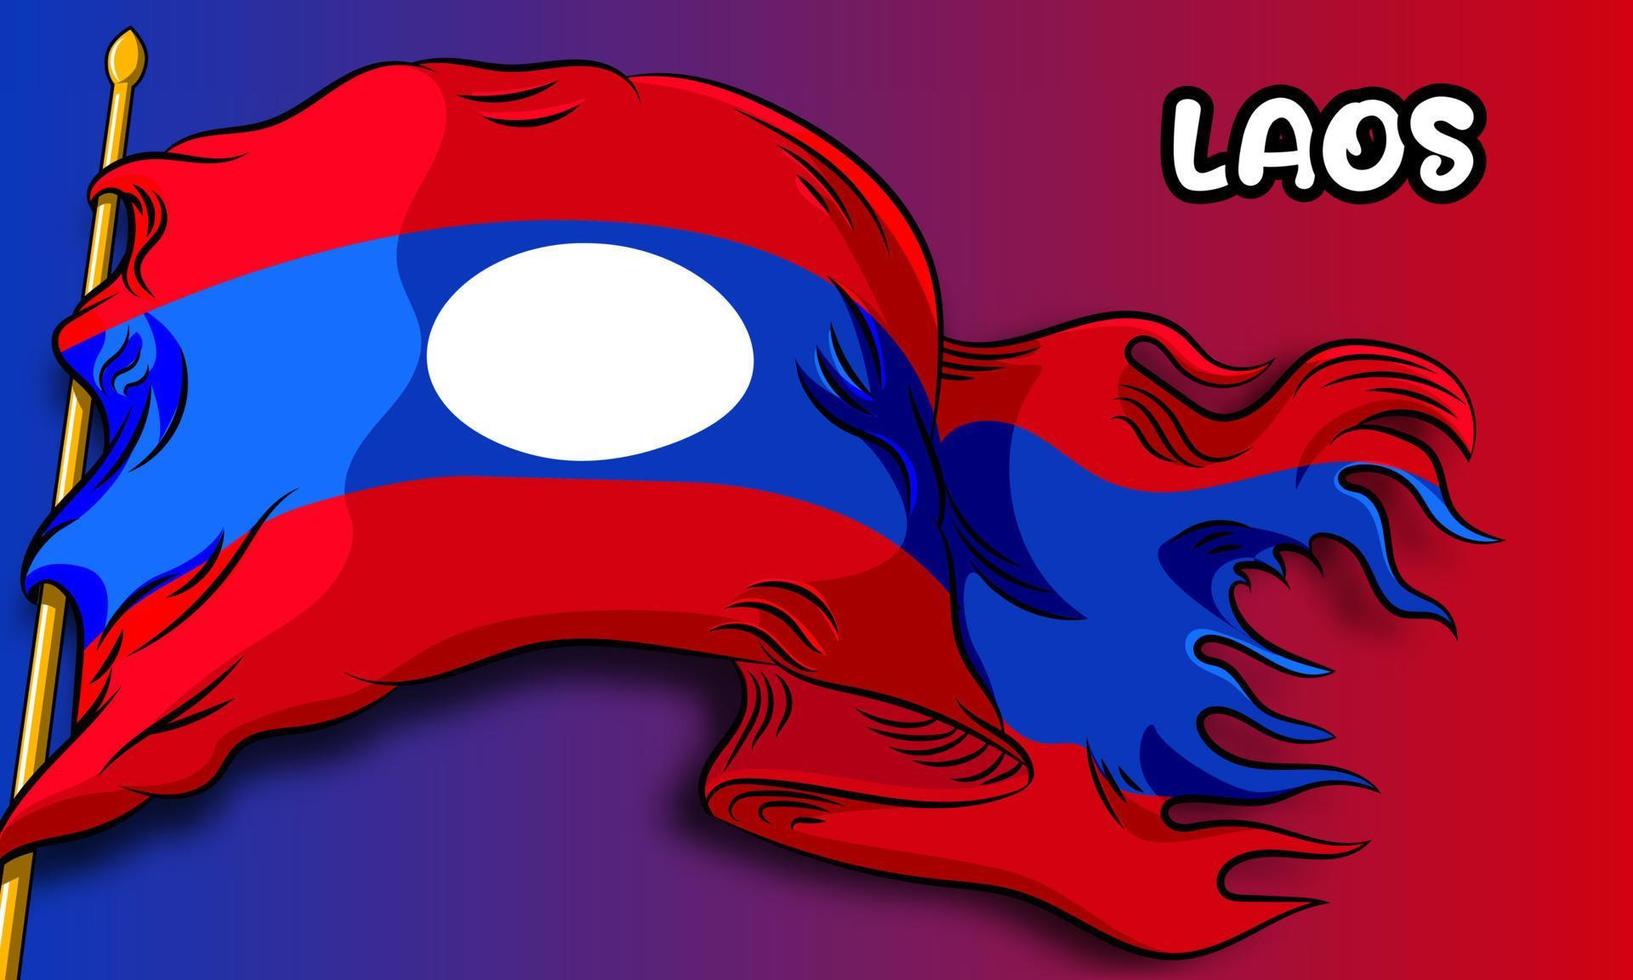 bandiera vettoriale del laos con disegnata a mano